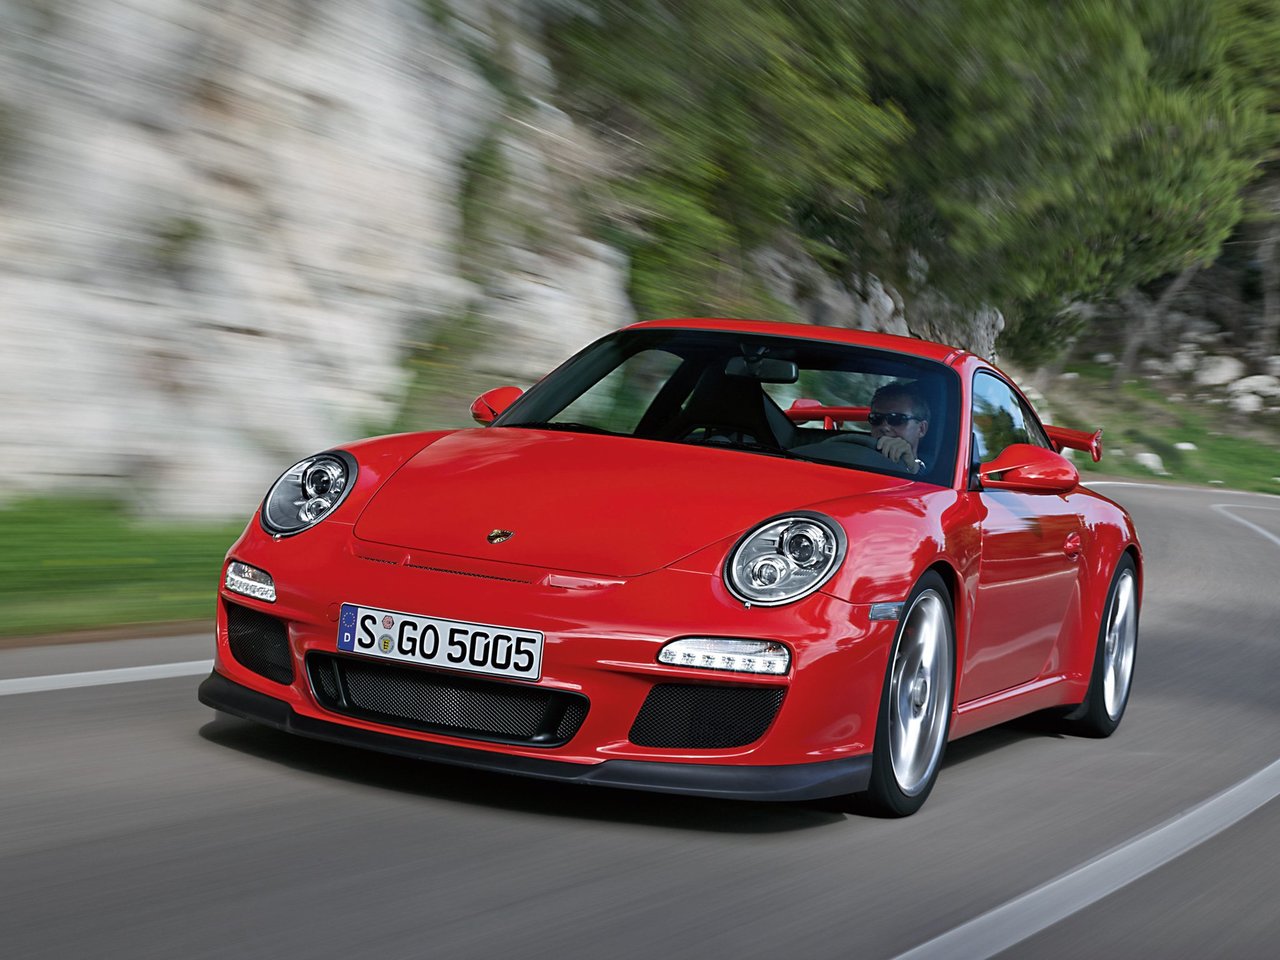 Снижаем расход Porsche 911 GT3 на топливо, устанавливаем ГБО